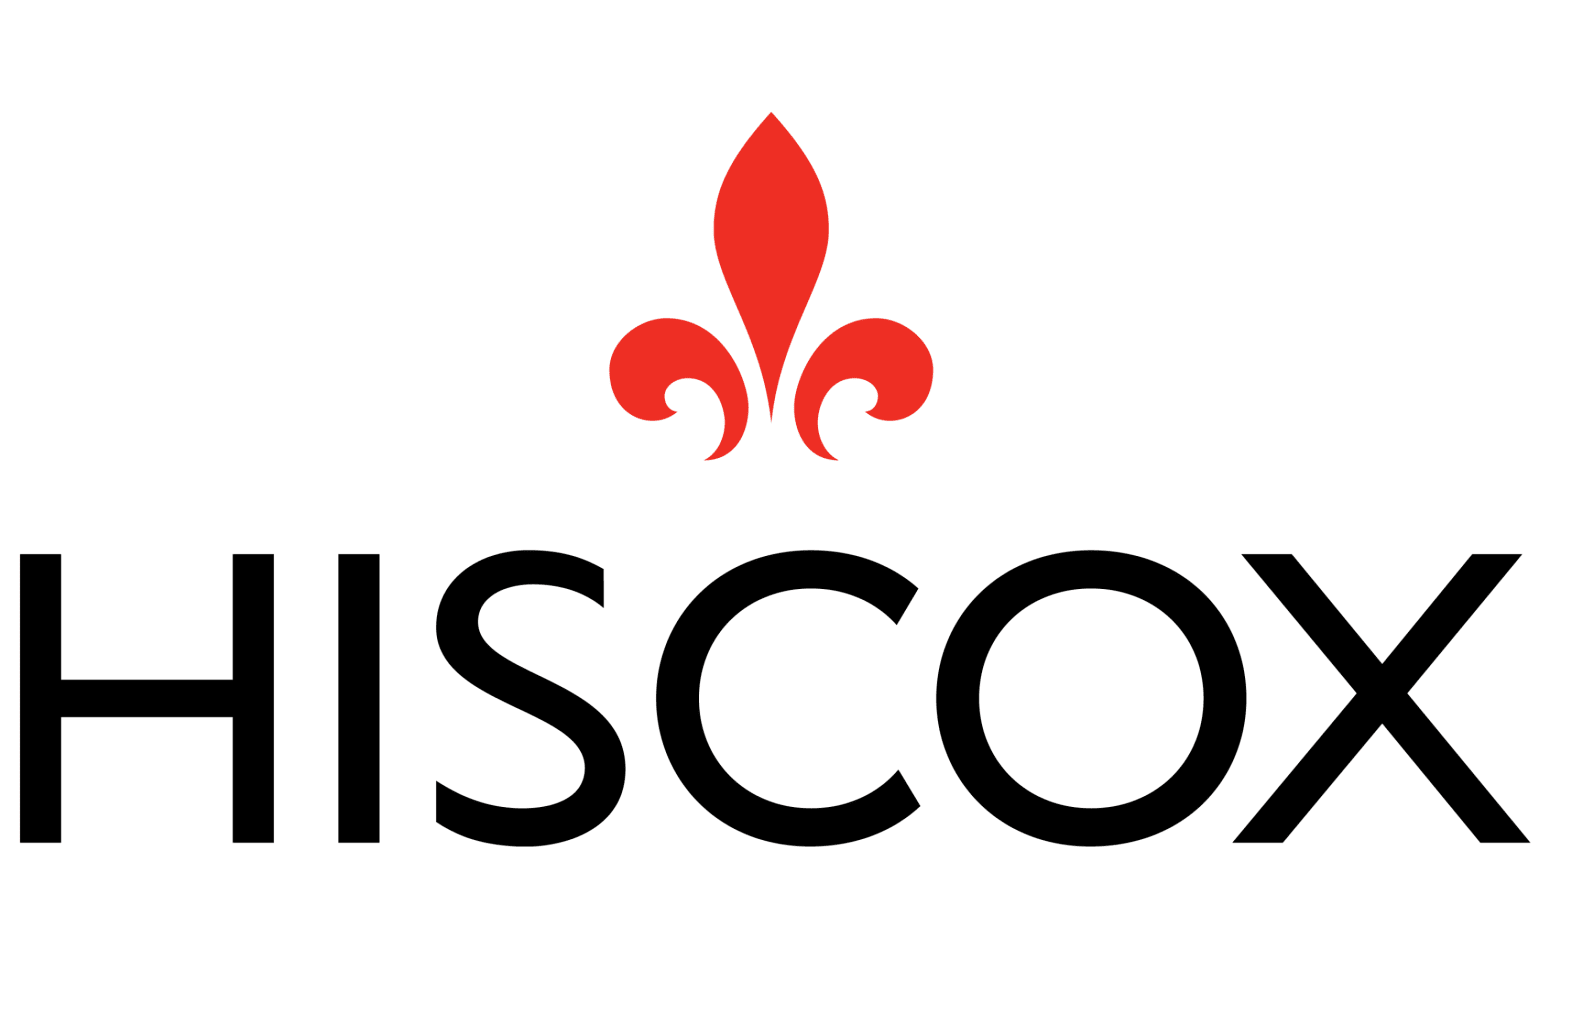 HISCOX logo